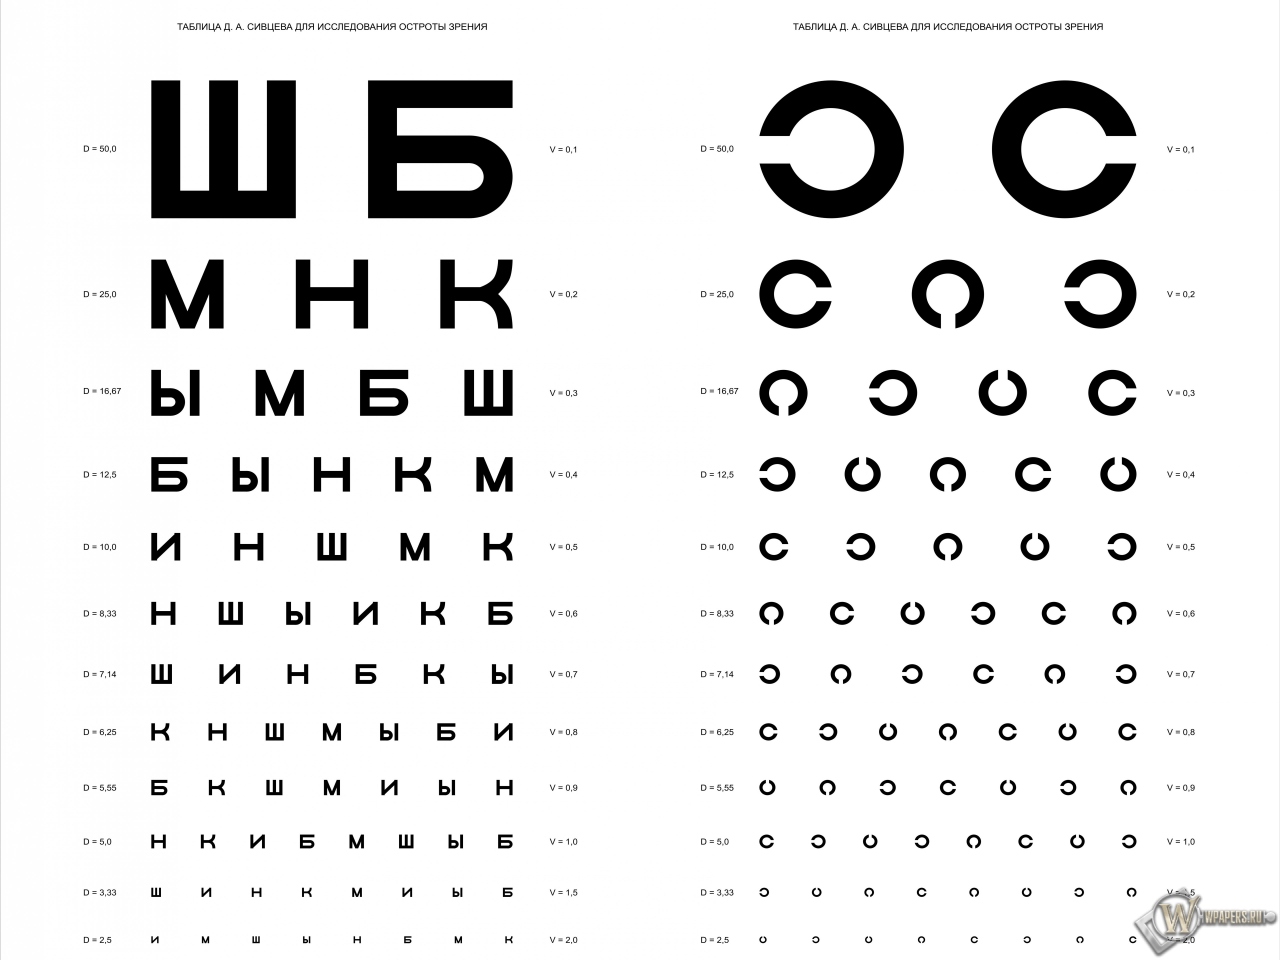 Таблица Д.А. Сивцева для проверки зрения 1280x960